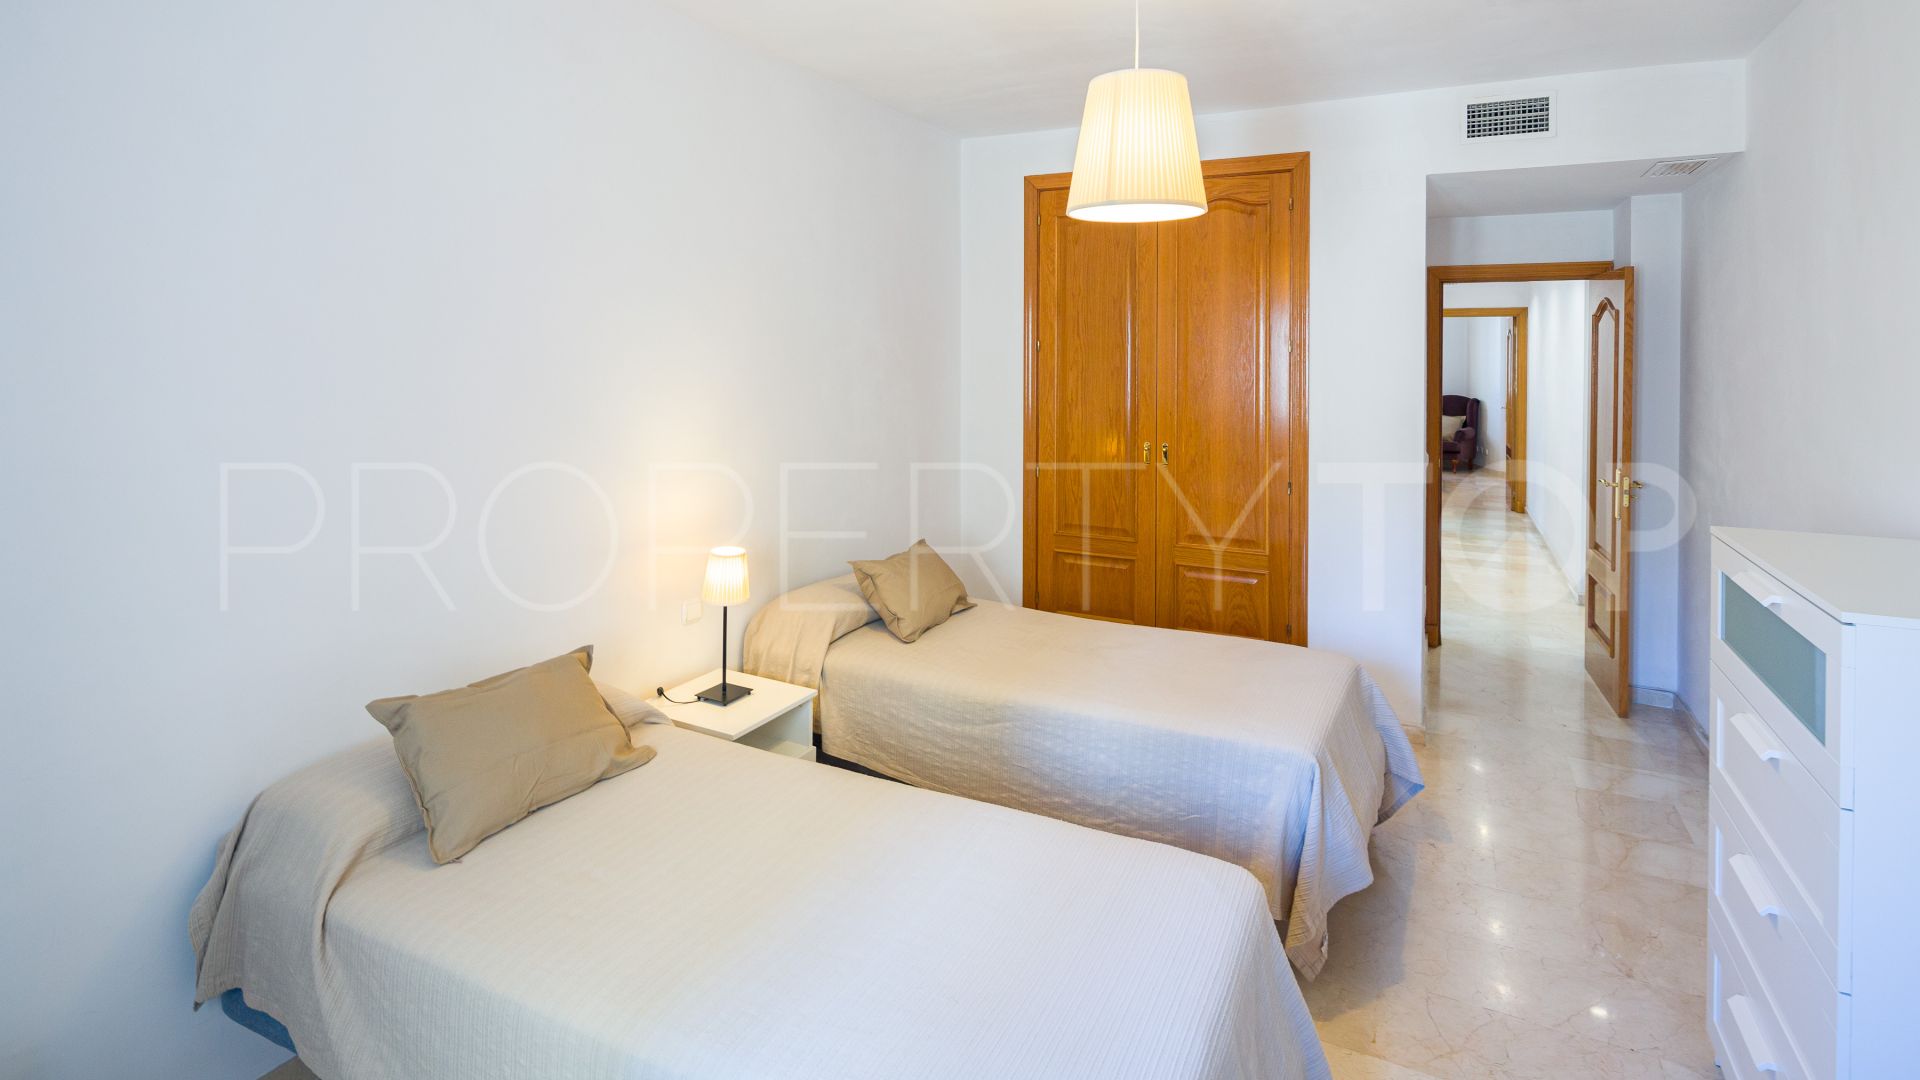 2 bedrooms apartment in Playa Bajadilla - Puertos for sale